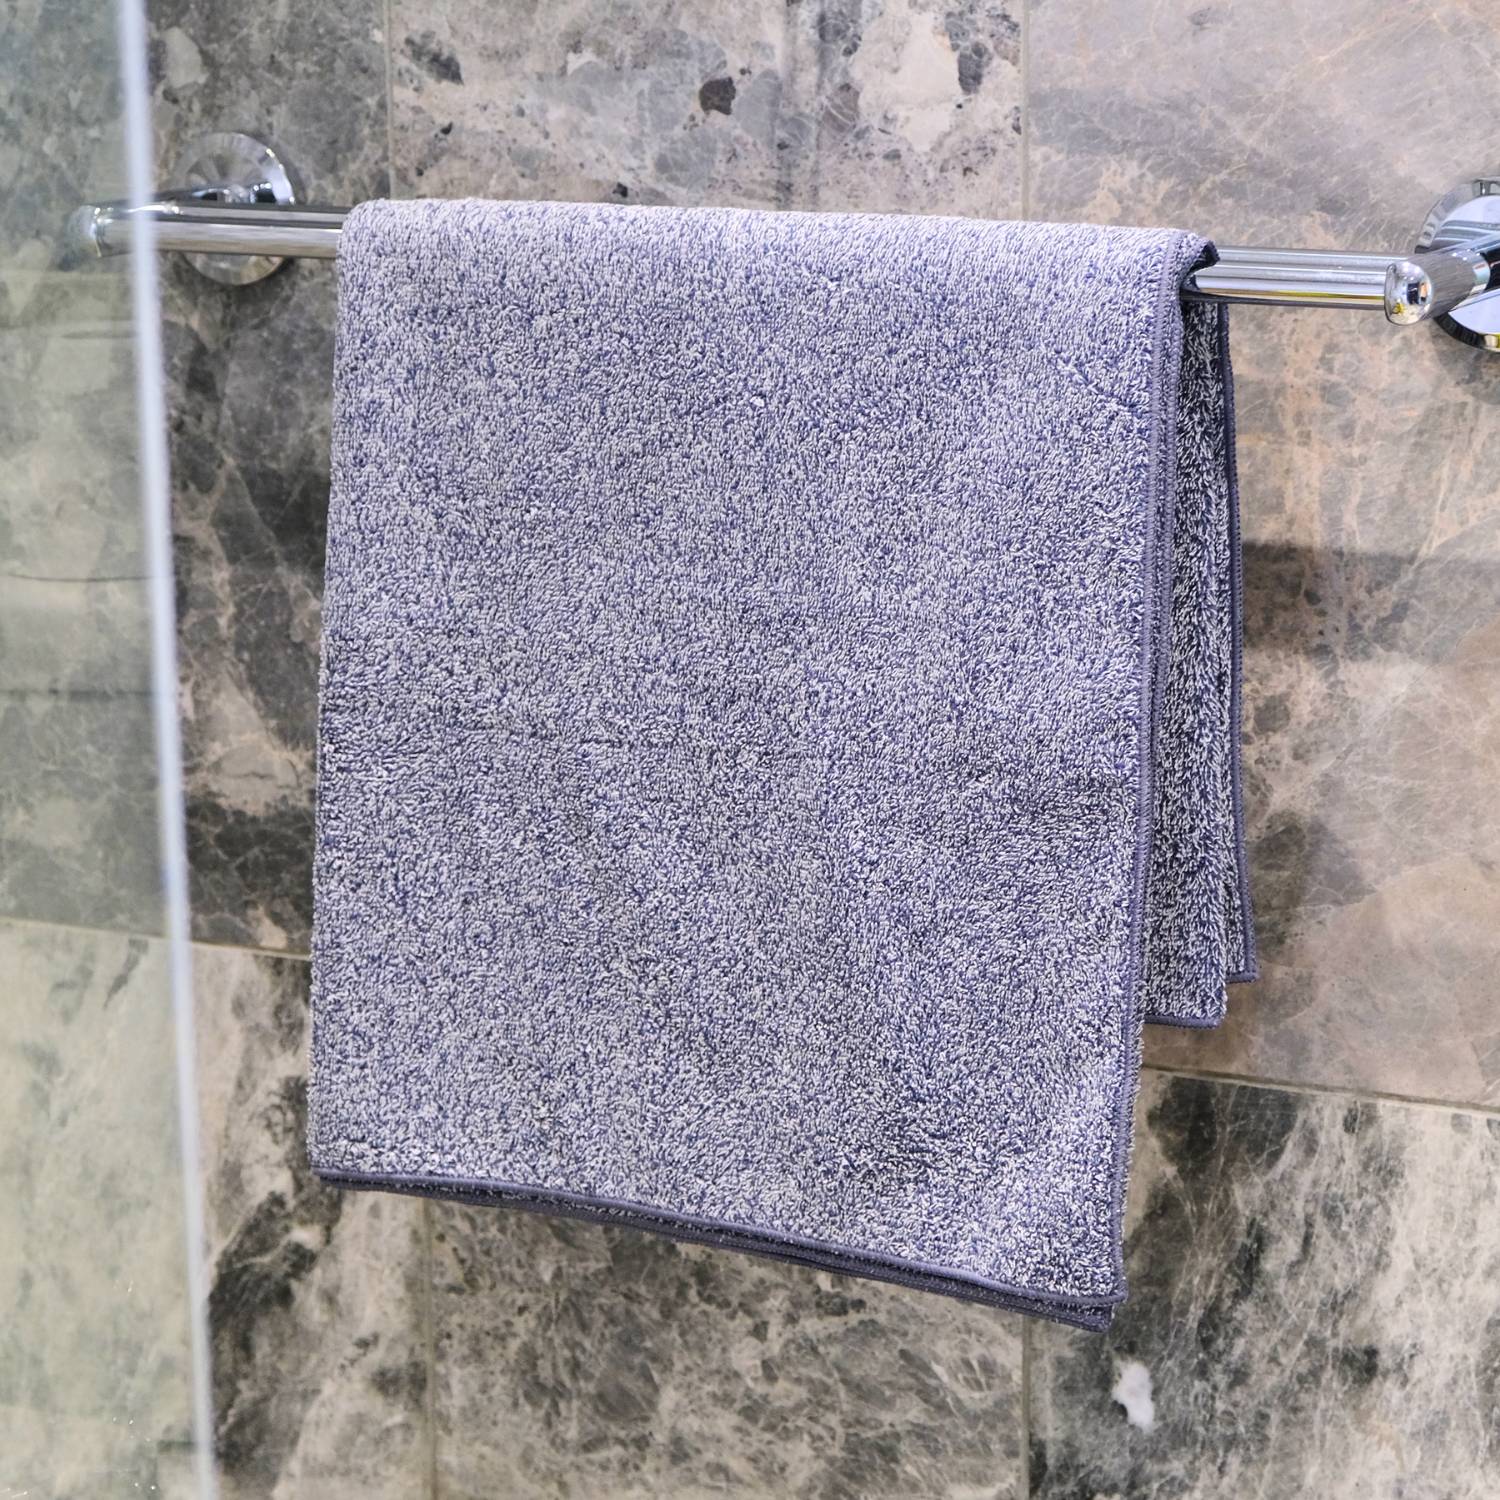 Πετσέτες μπάνιου από μικροΐνες (400 γρ.)